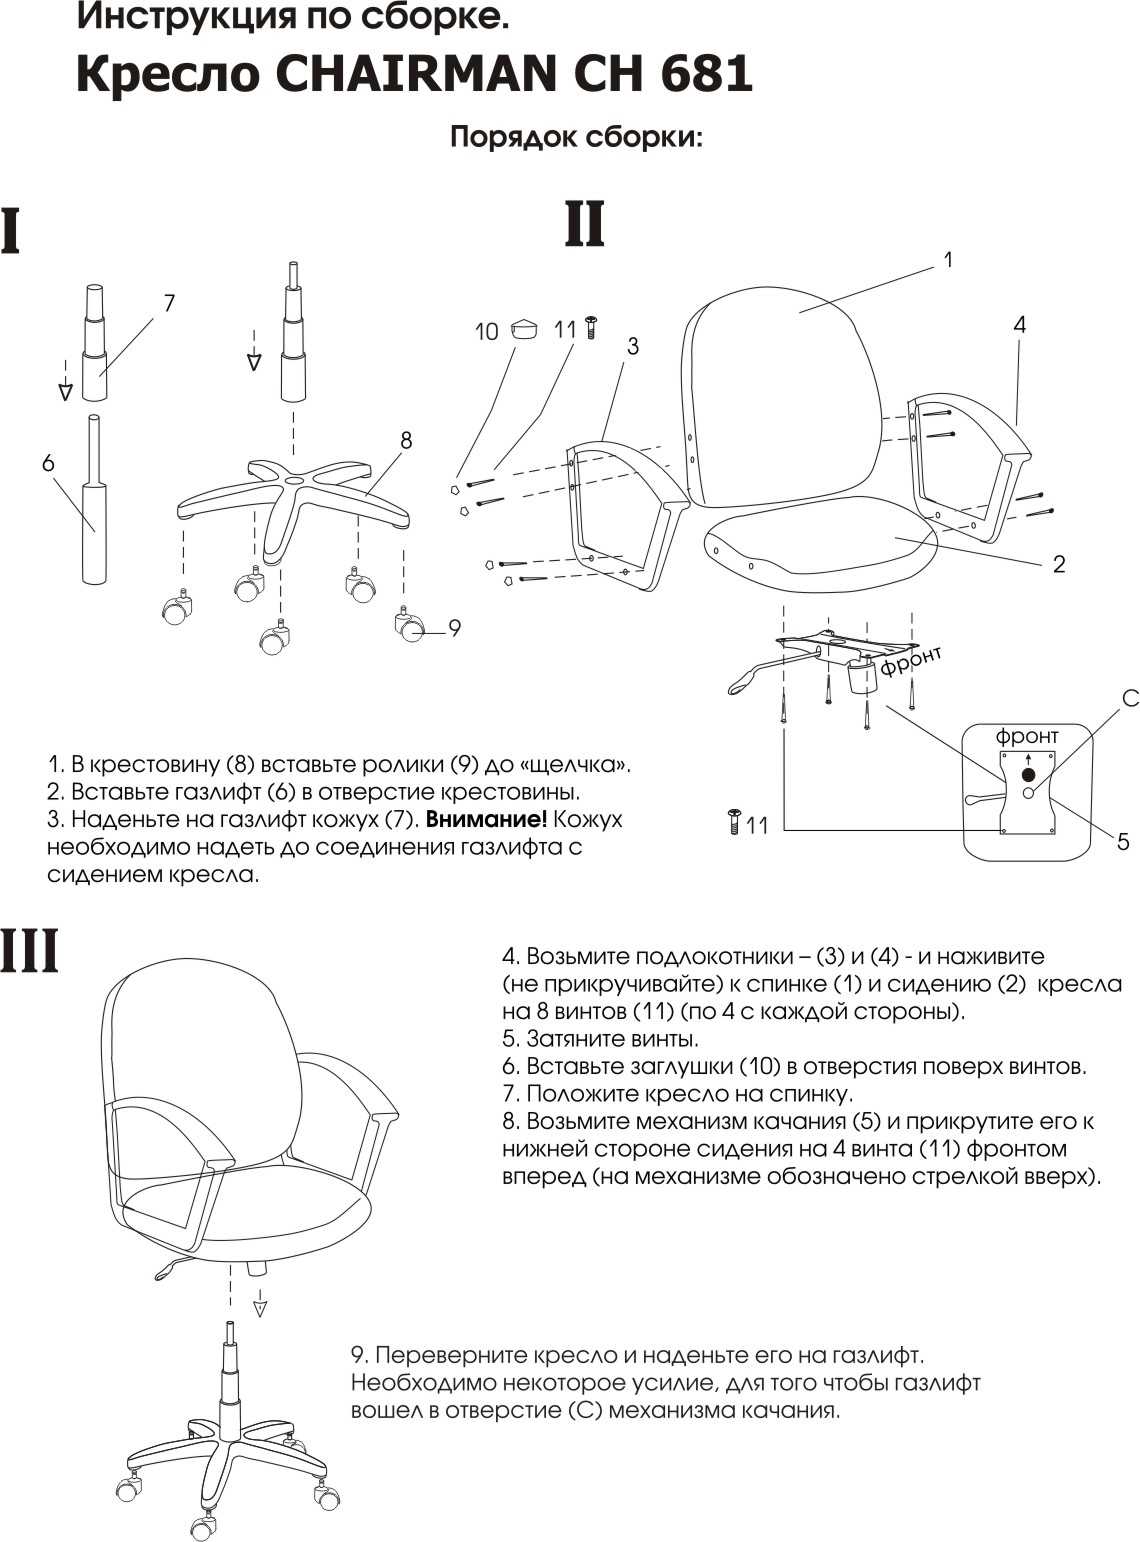 Замена газлифта в офисном кресле: инструкция по ремонту своими руками